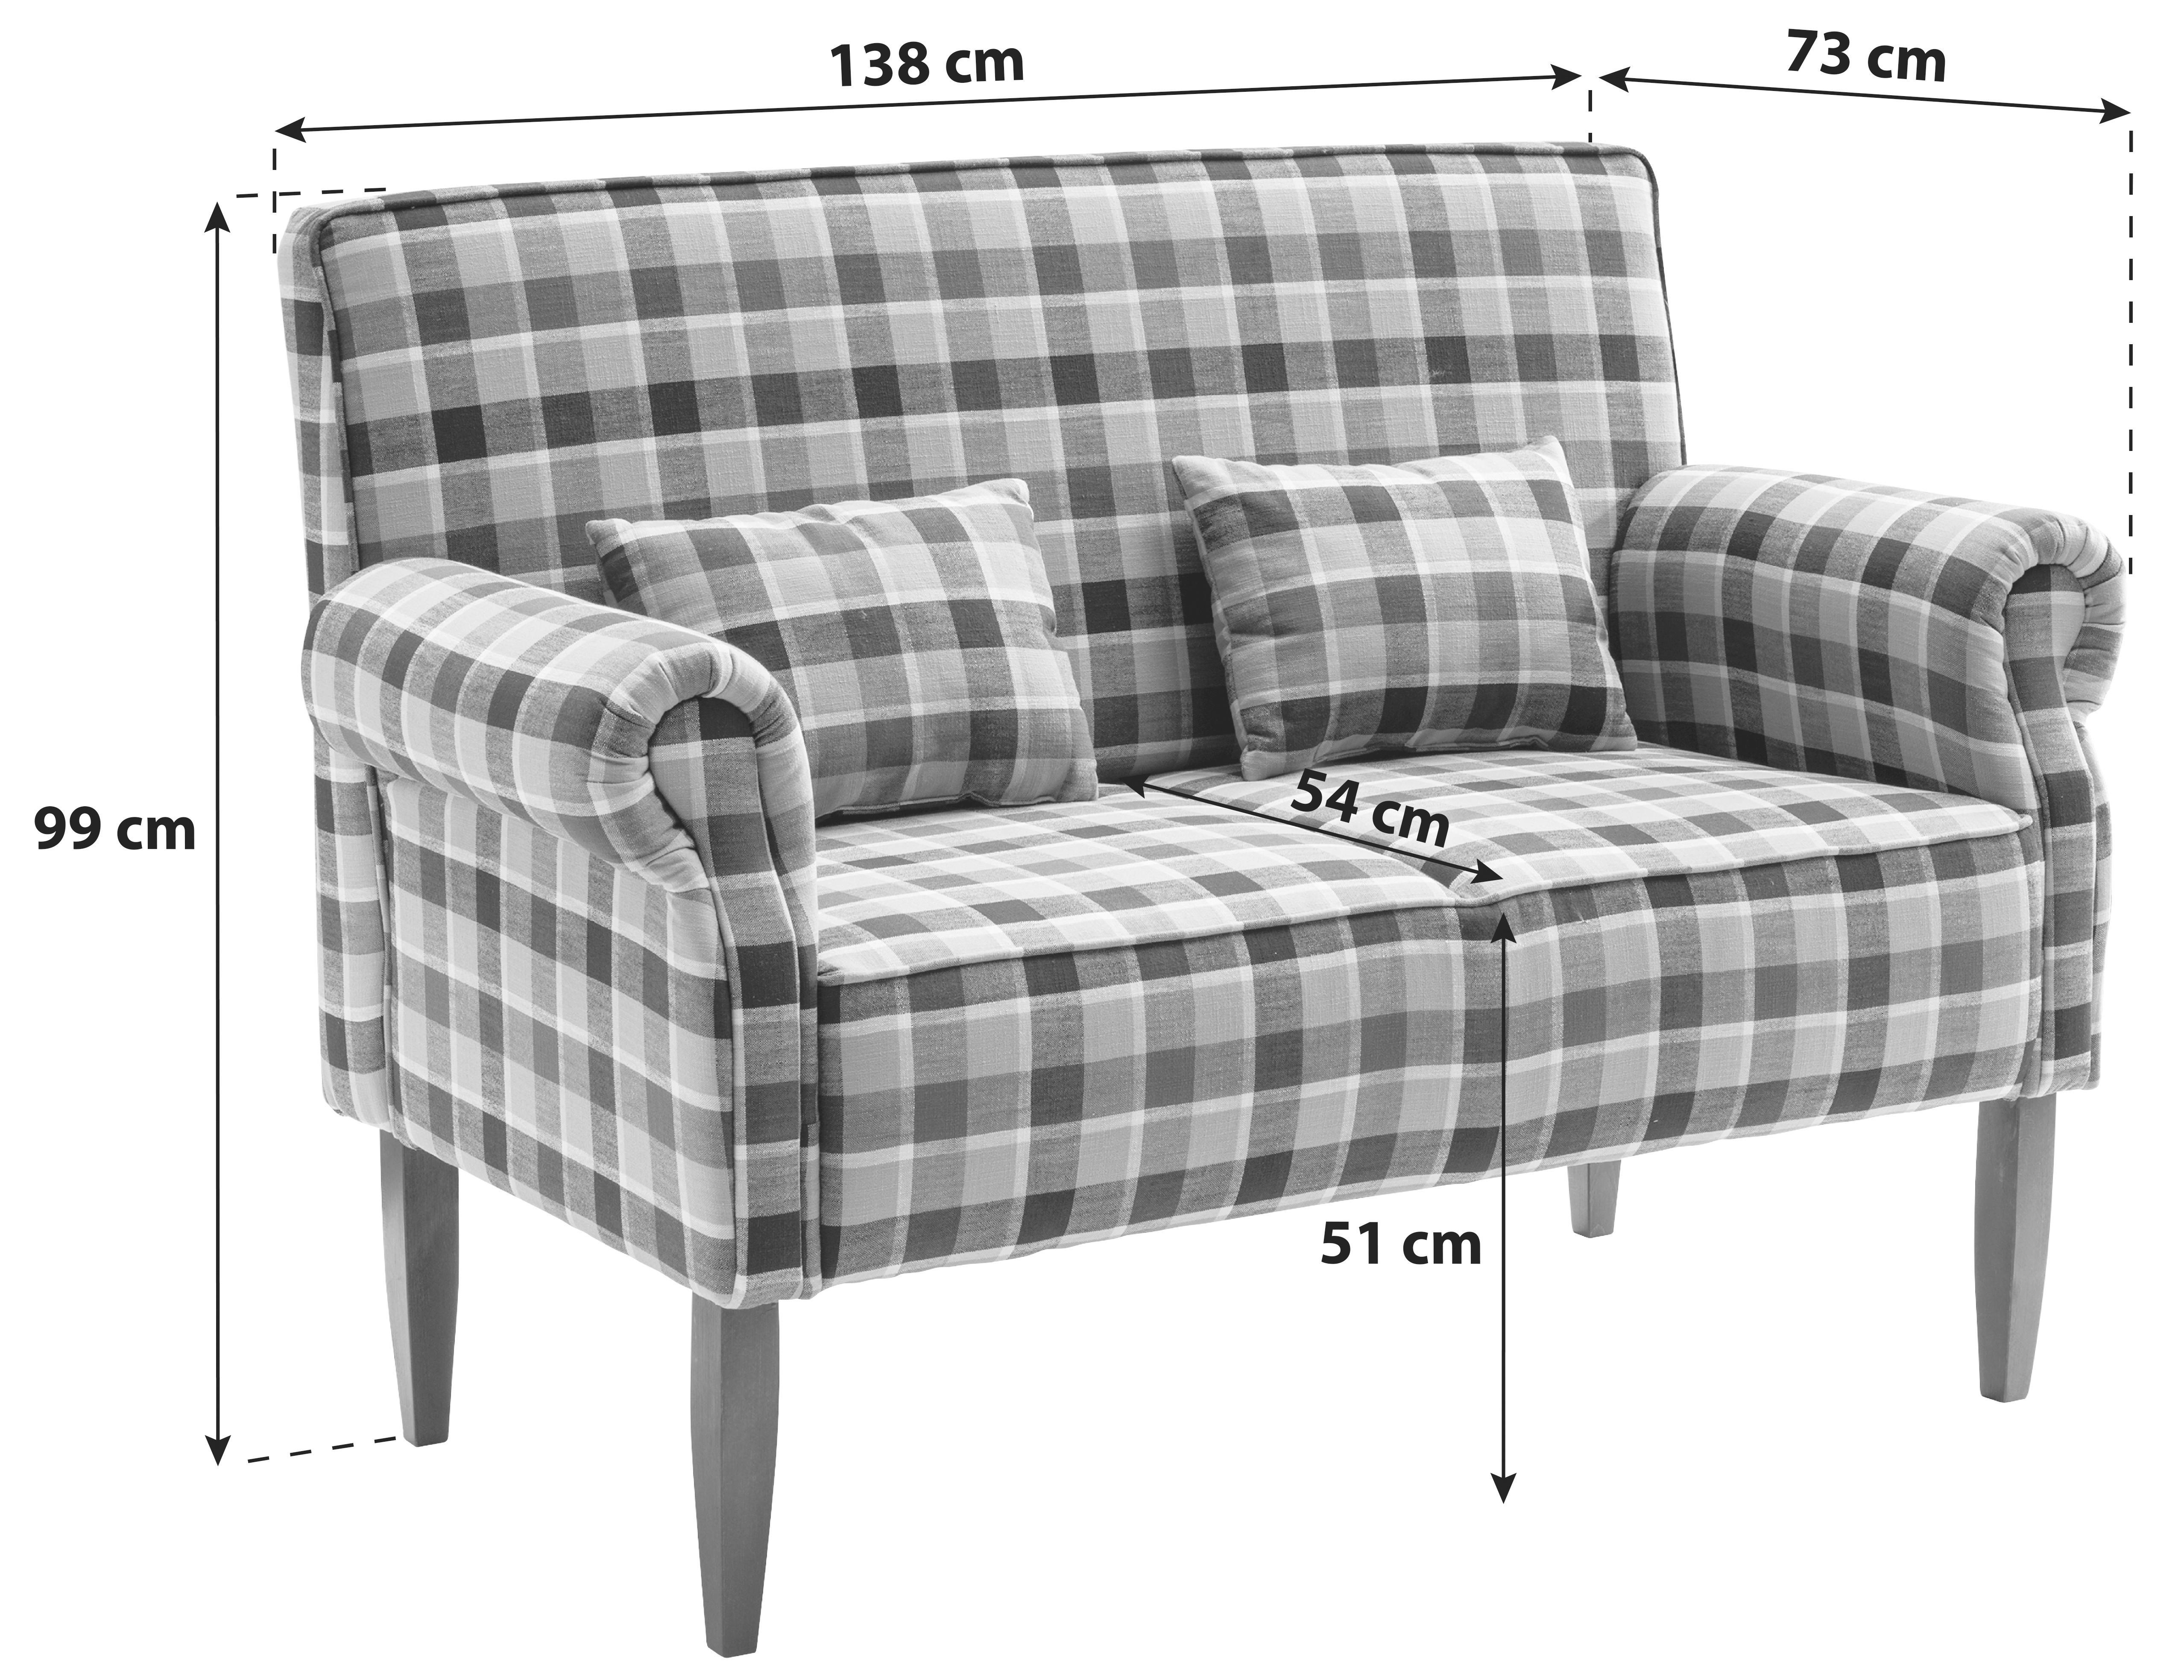 Zweisitzer-Sofa mit Zierkissen Antoni, Mikrofaser - Hellbraun/Eichefarben, LIFESTYLE, Textil (138/99/73cm) - Livetastic